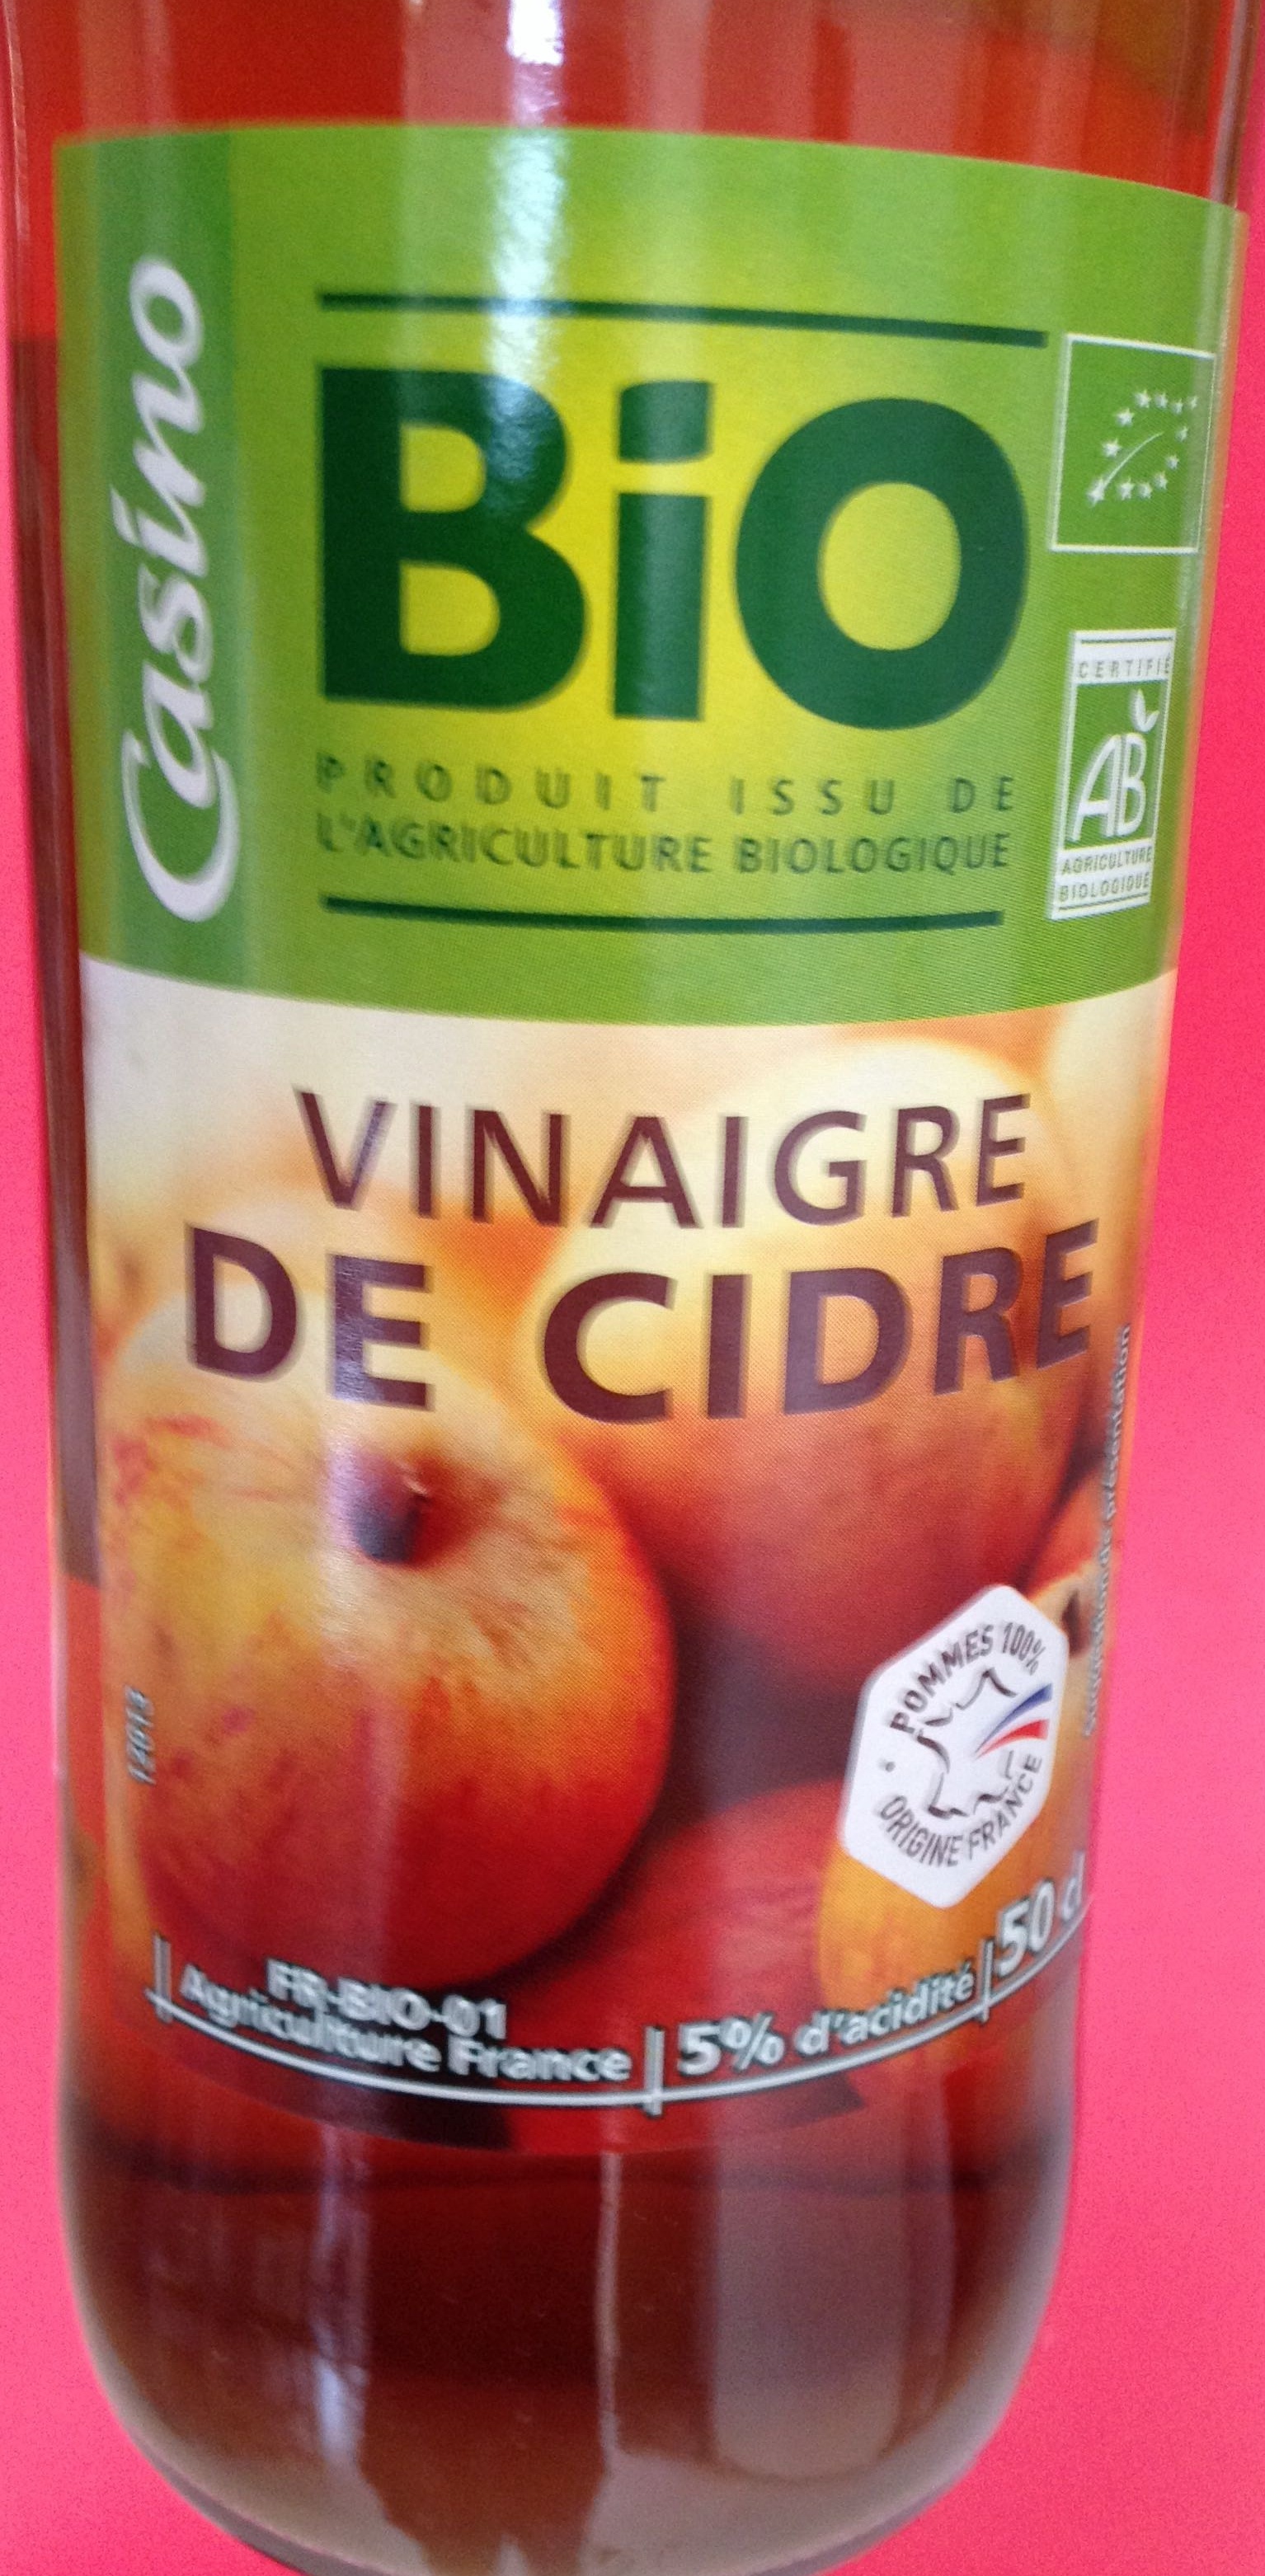 Vinaigre de cidre - 5% d'acidité - نتاج - fr